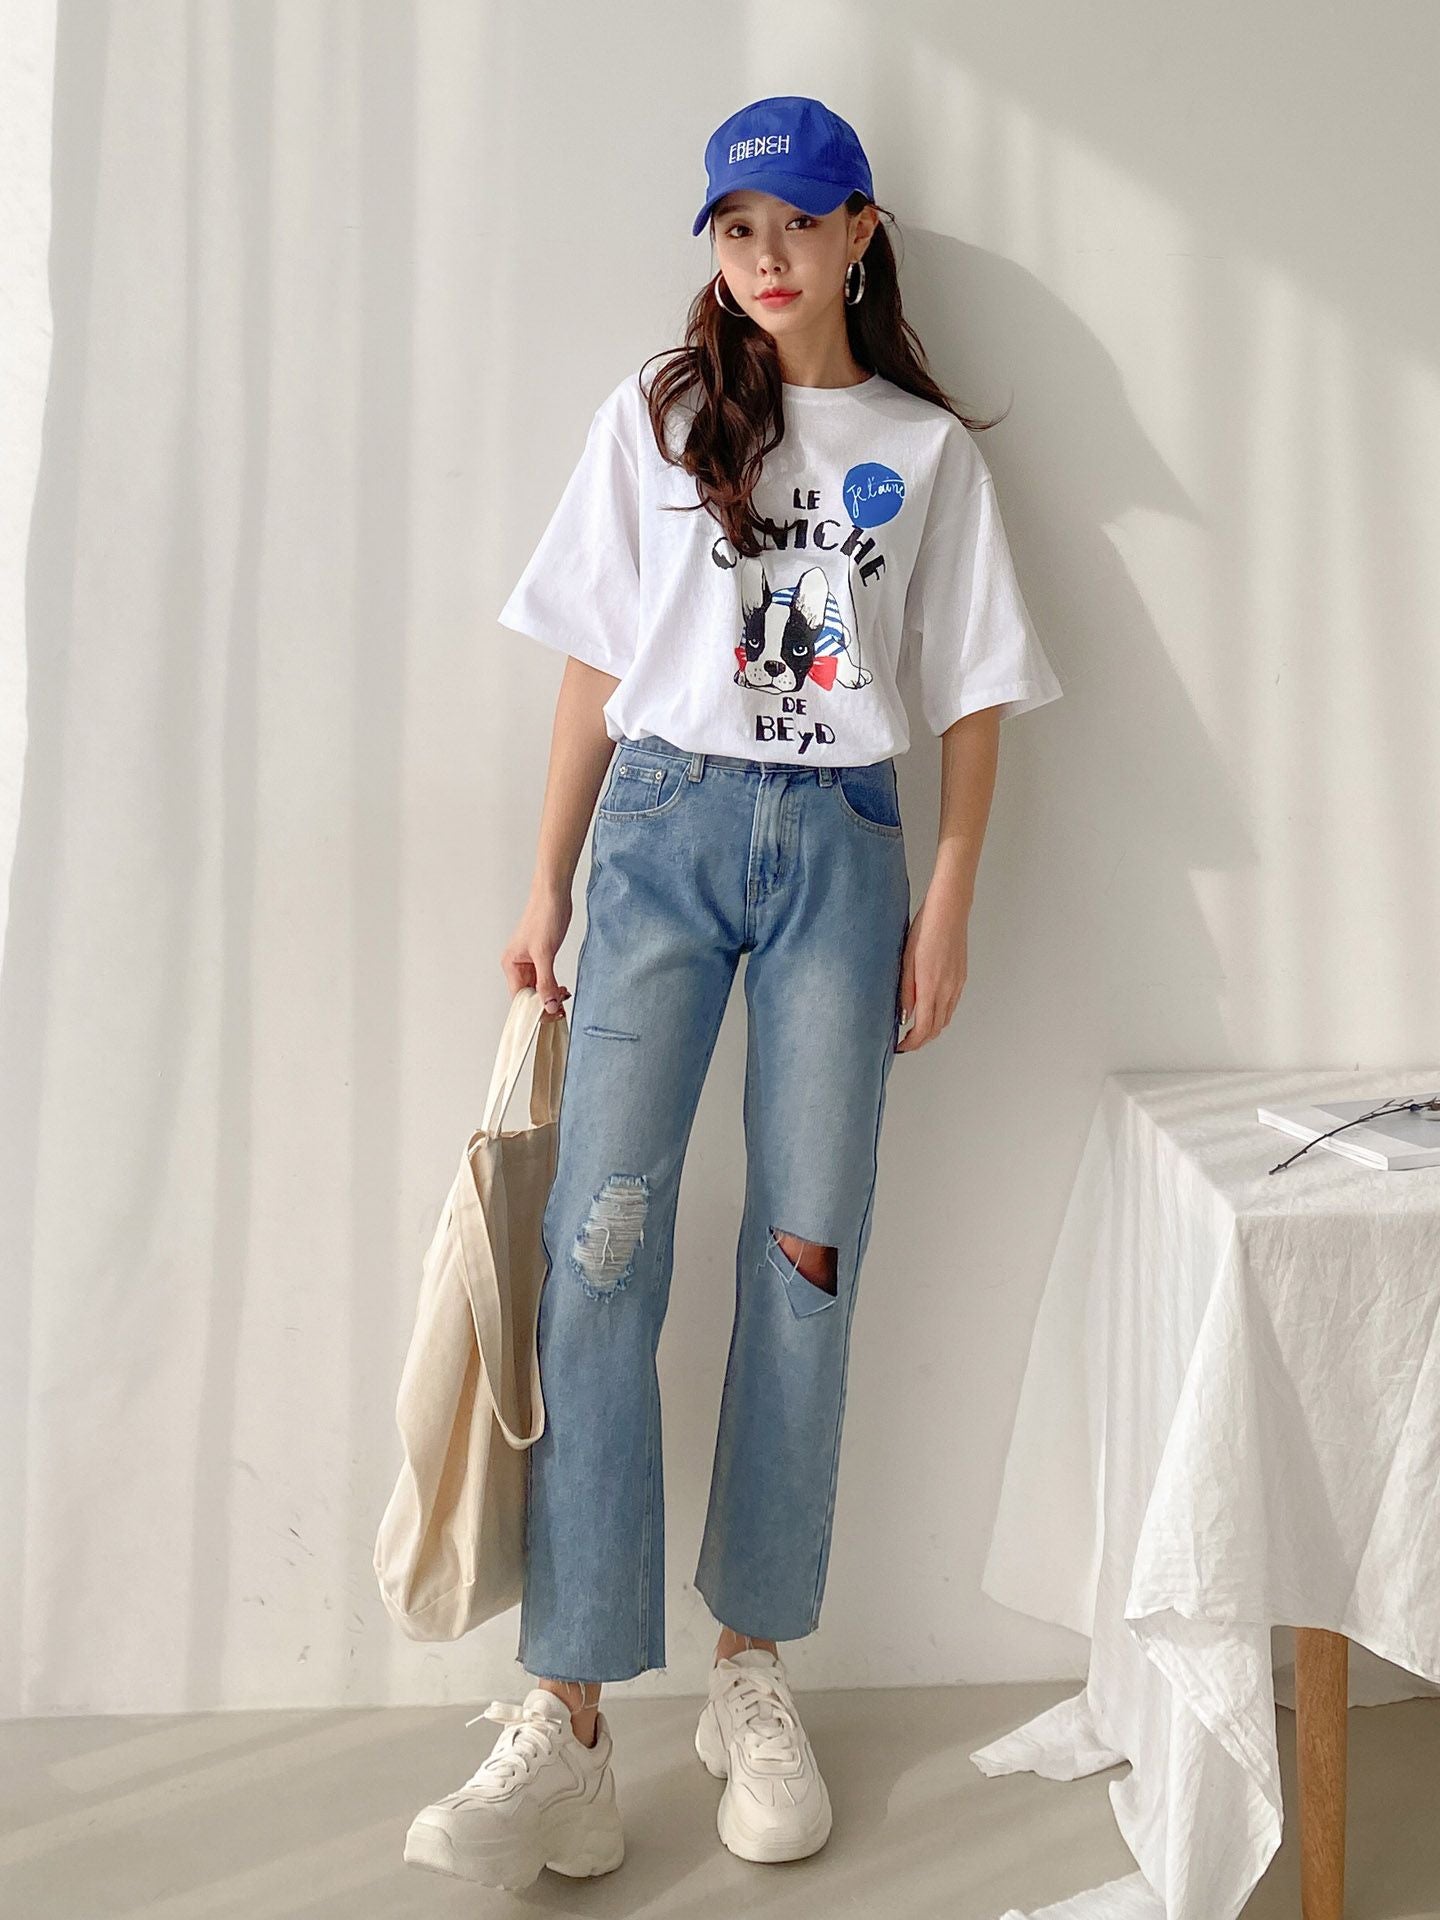 데미지 크롭 컷팅 청바지 한국 옷 가게 온라인 샵 스토어 damage crop cutting jeans korean fashion online home shopping shop store